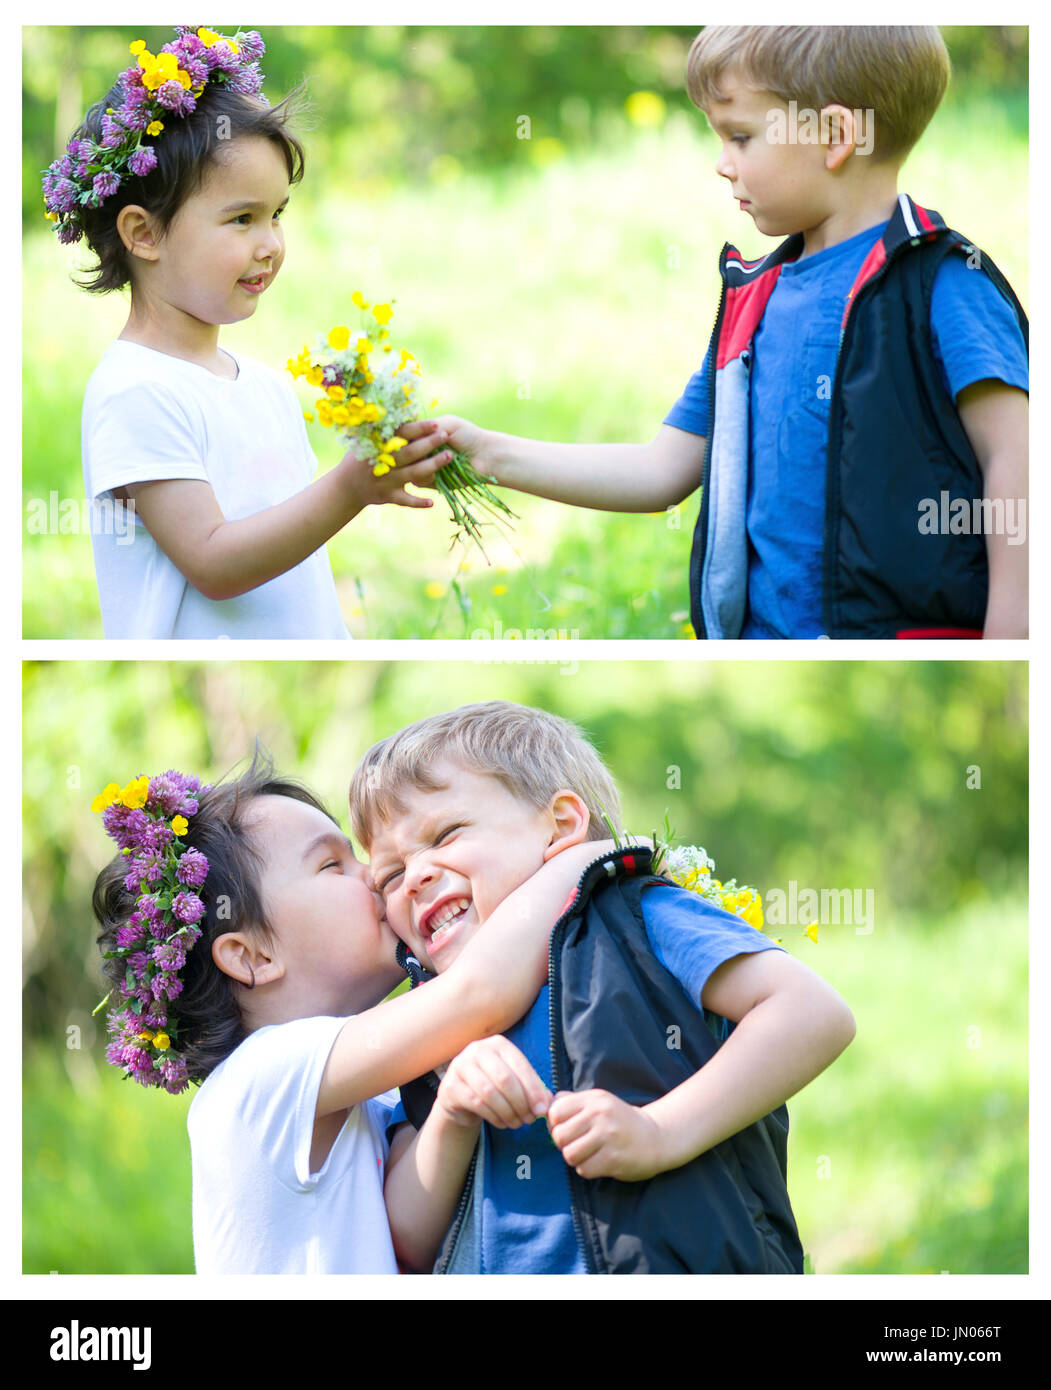 Bel ragazzo e una ragazza in un parco, ragazzo dando fiori per la ragazza Foto Stock